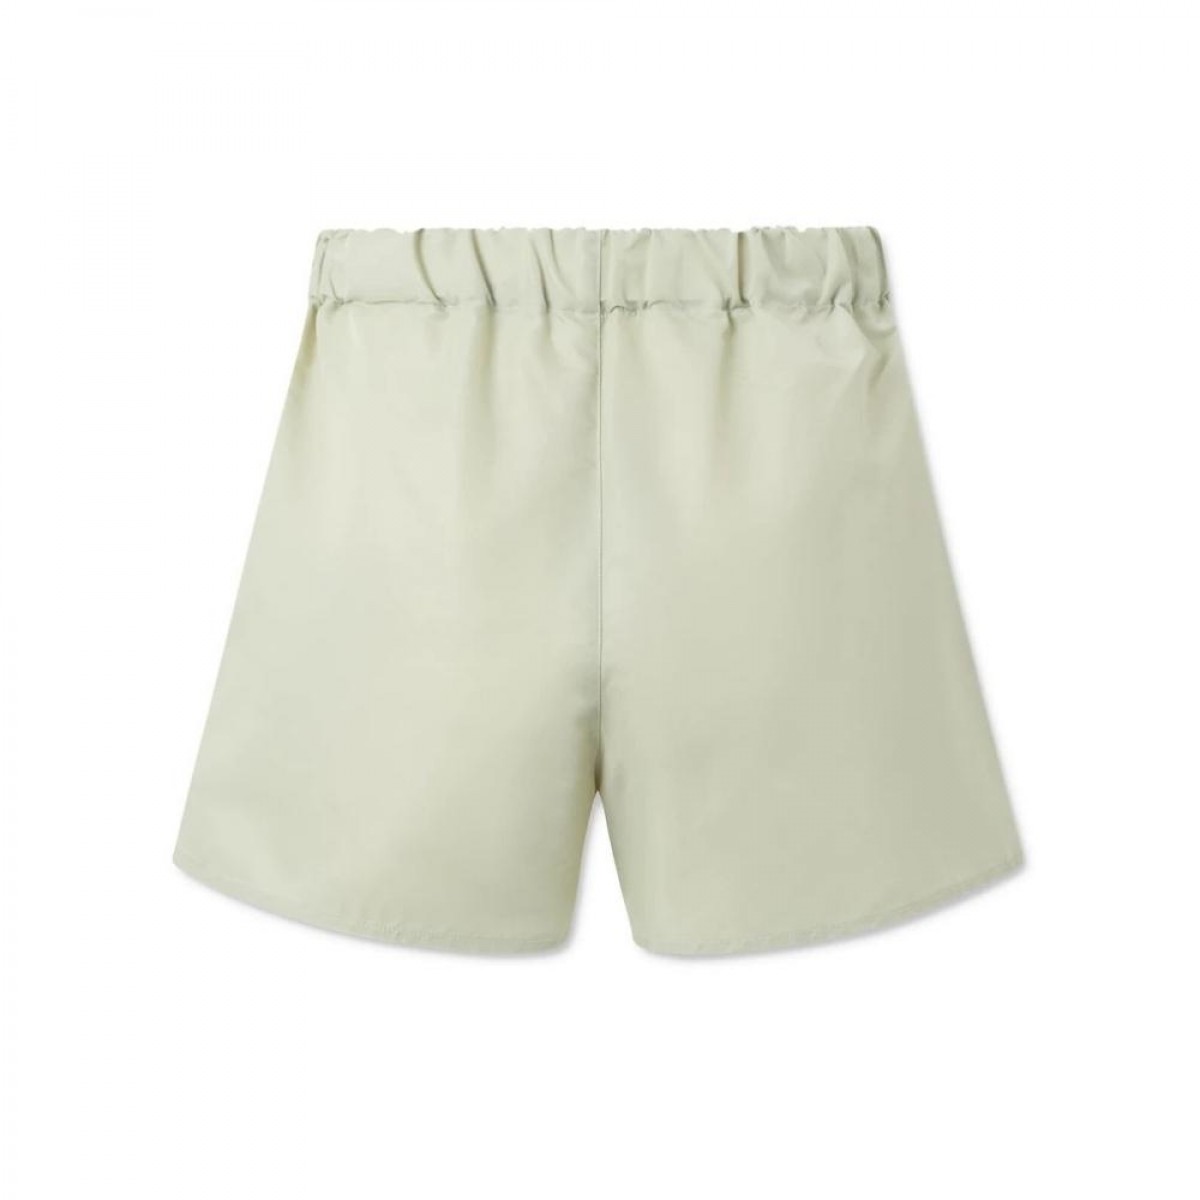 alessio shorts - saga green - bag